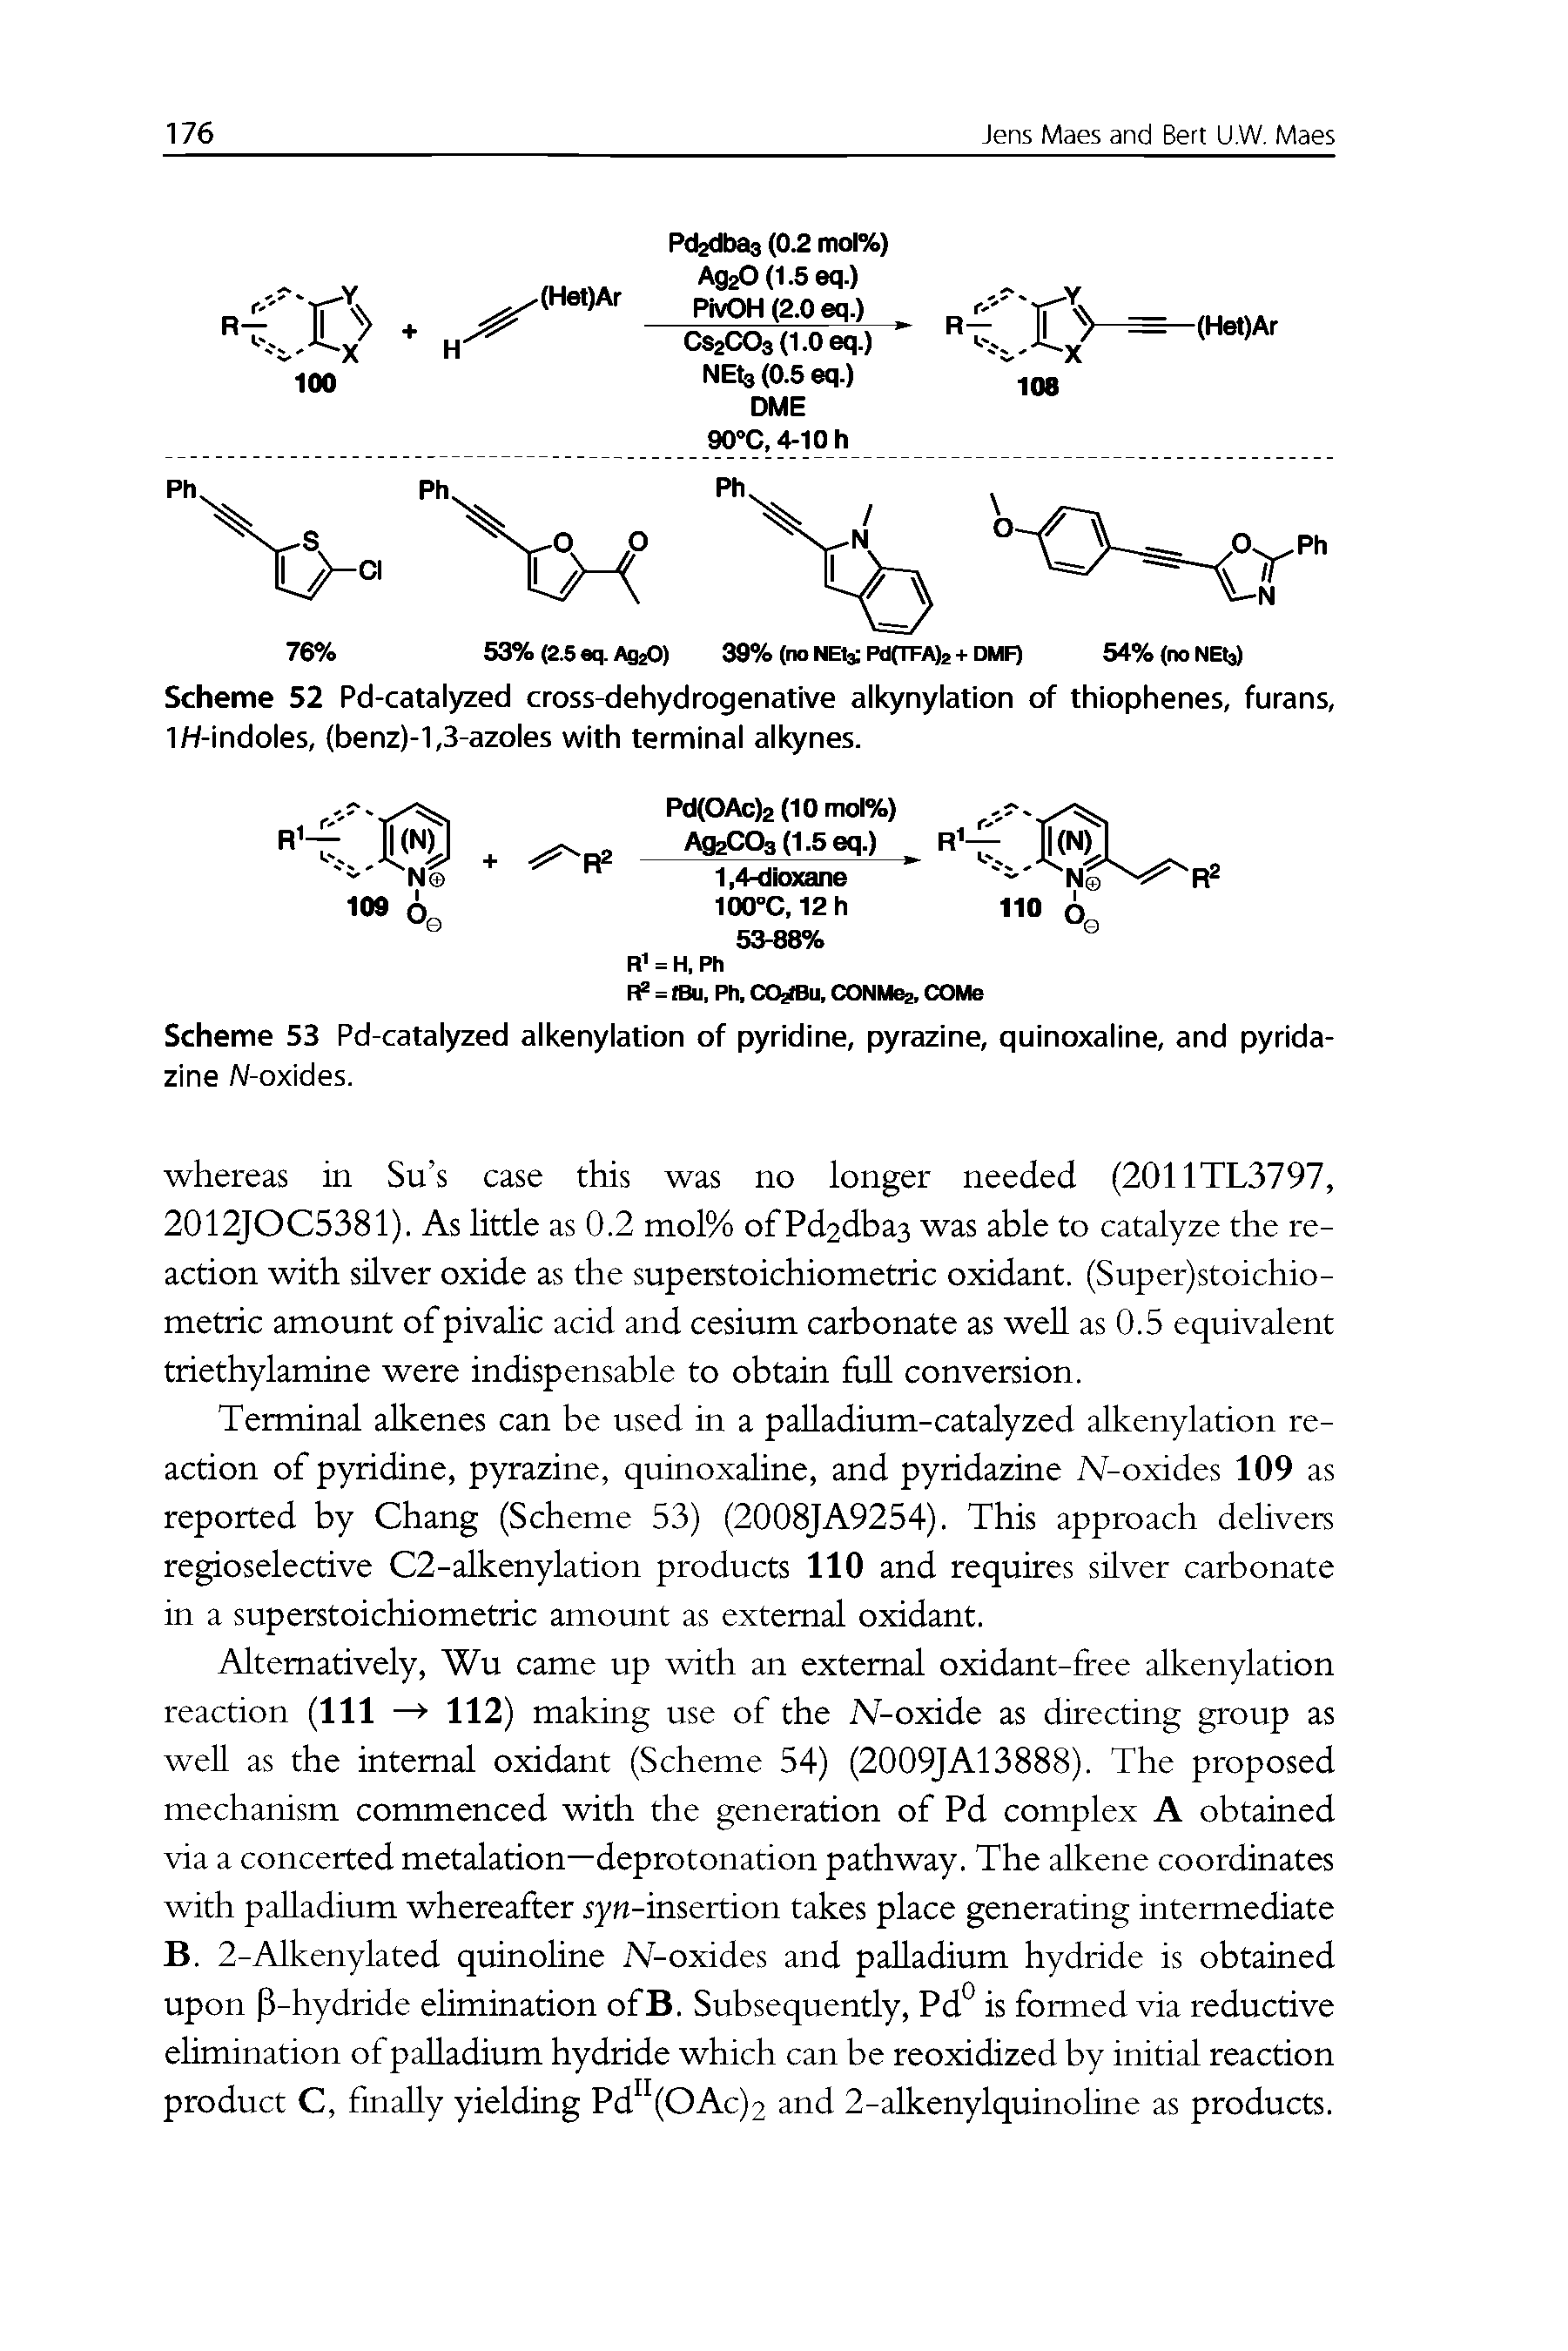 Scheme 53 Pd-catalyzed alkenylation of pyridine, pyrazine, quinoxaline, and pyrida-zine A/-oxides.